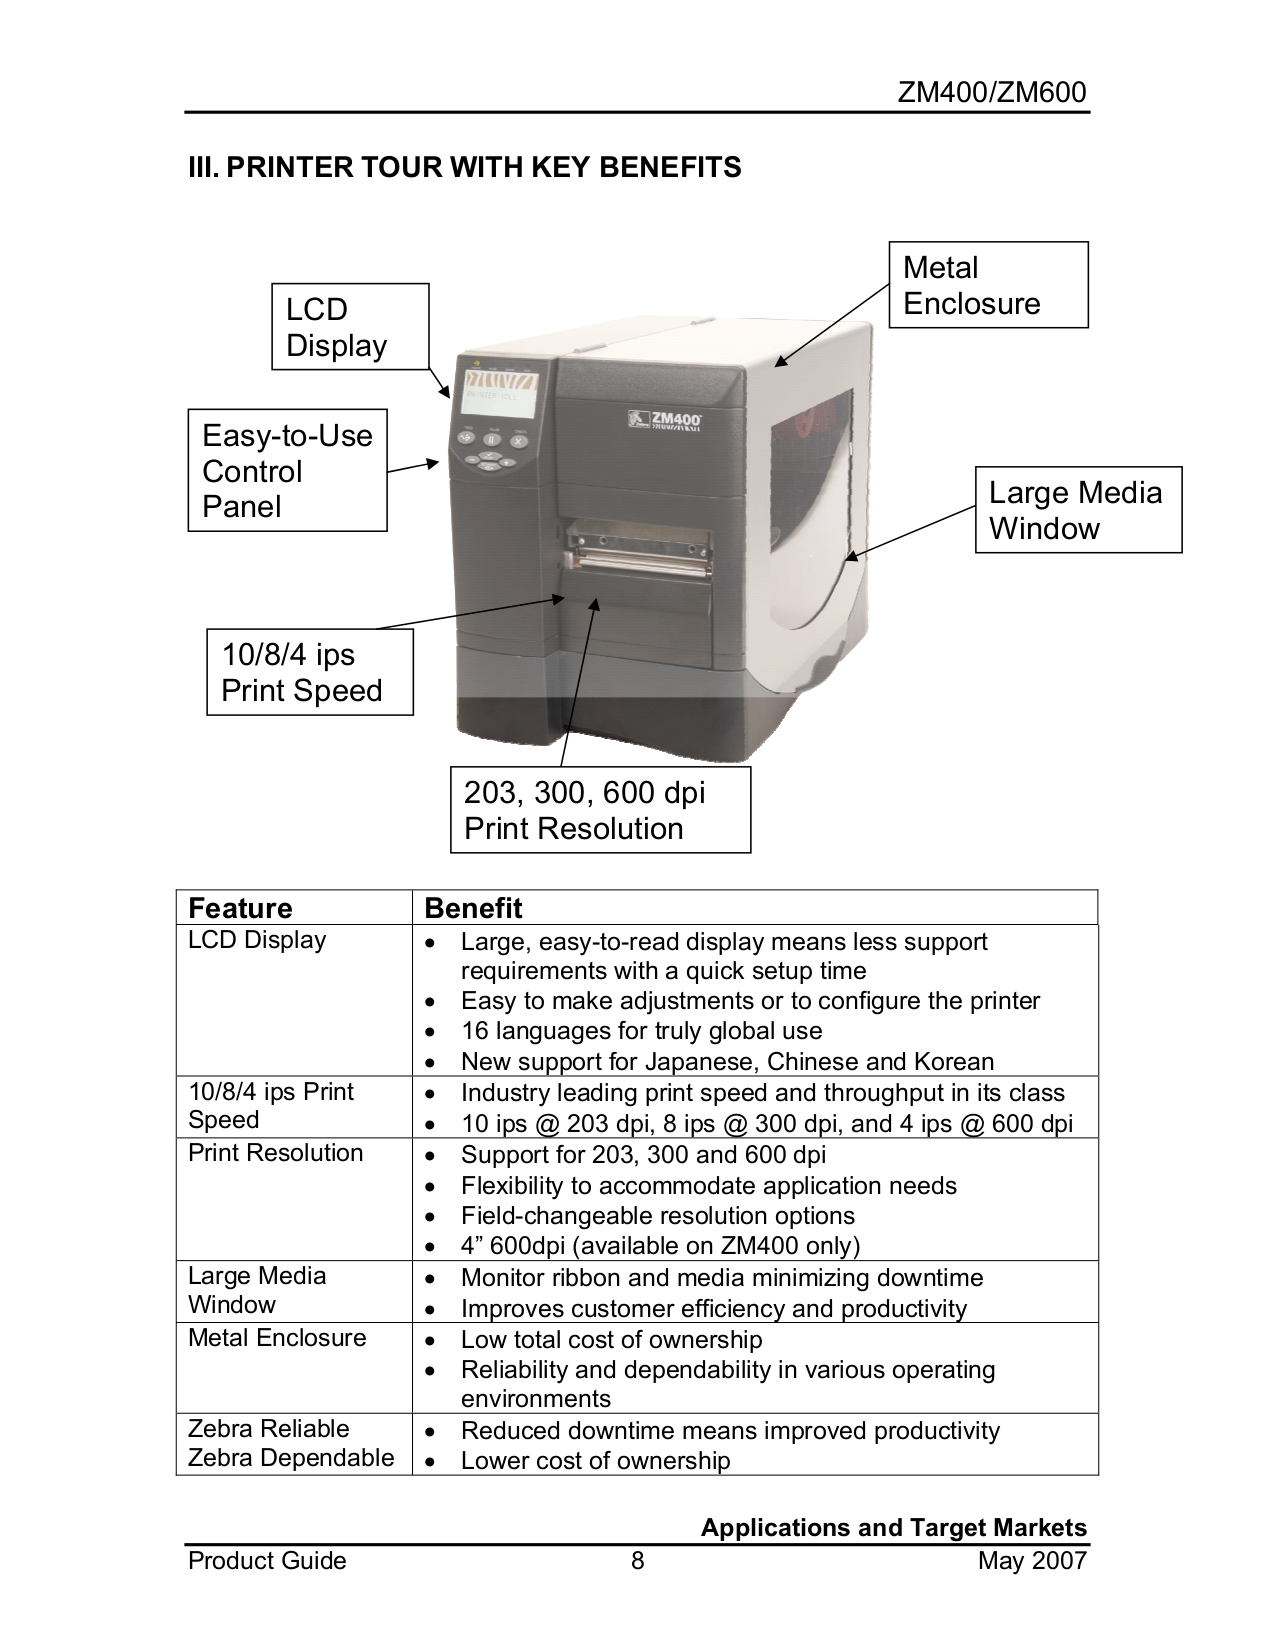 Pdf Manual For Zebra Printer Zm600 7125